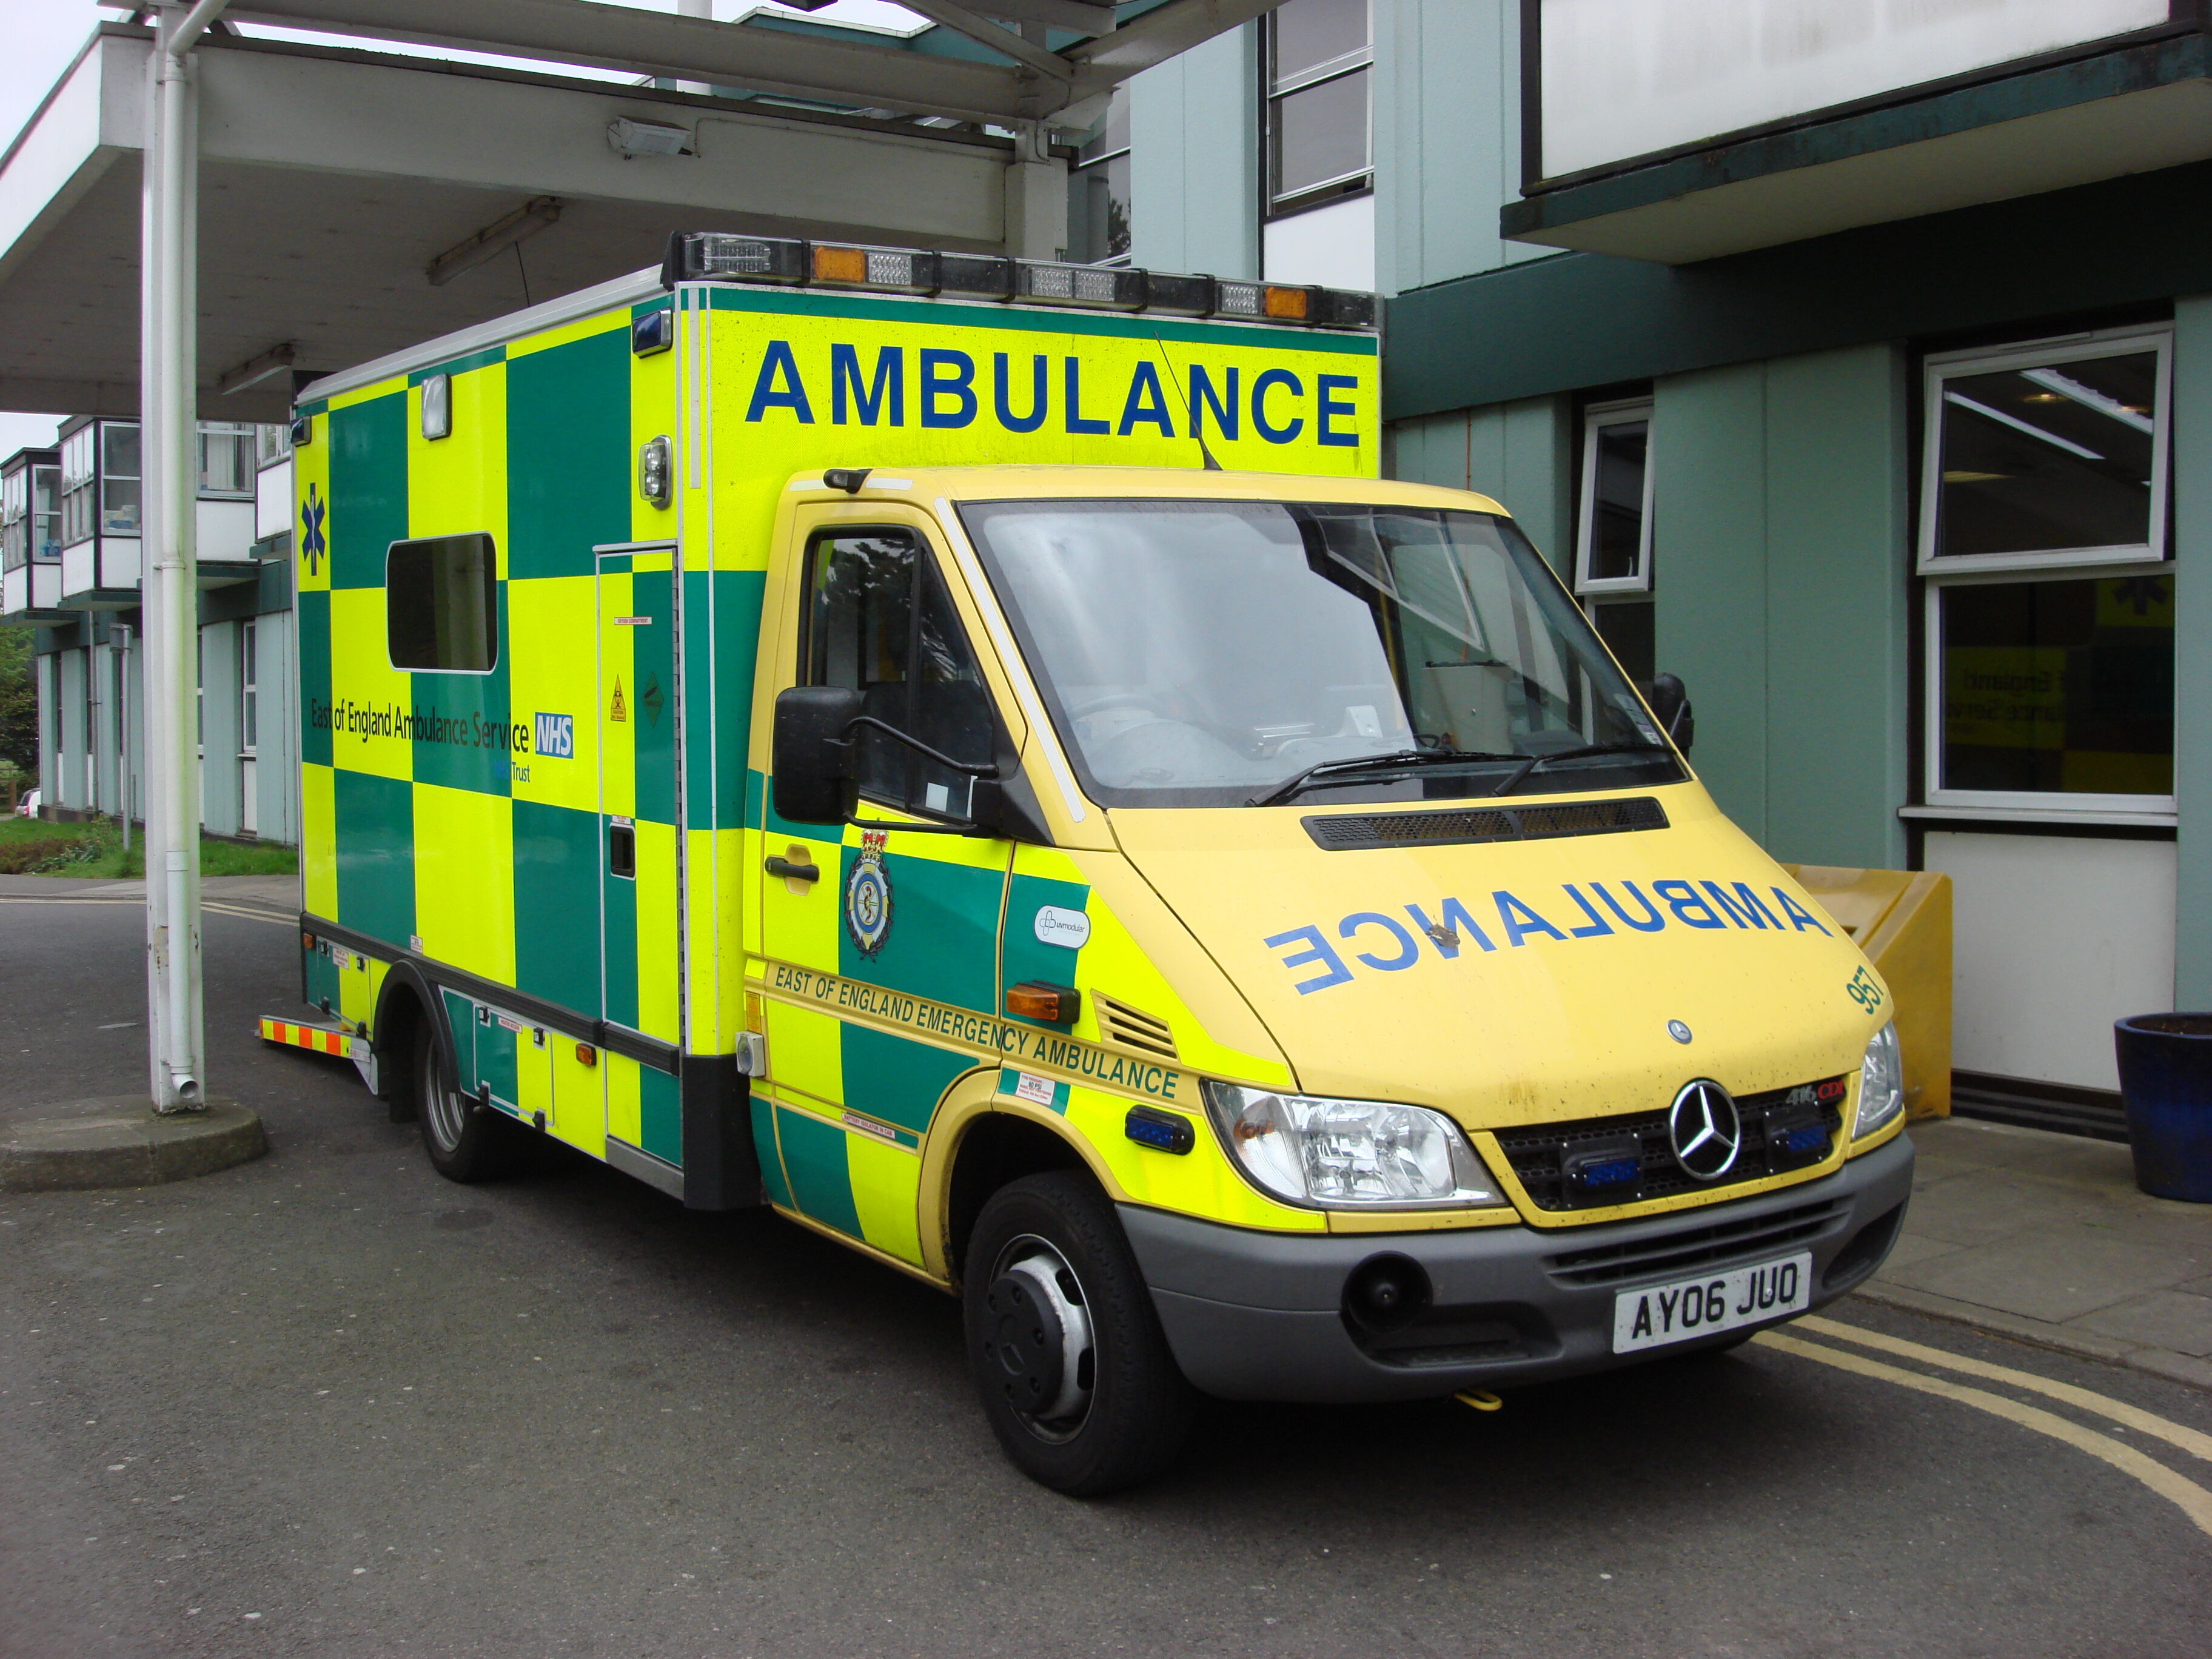 Voluntary ambulance - Wikipedia